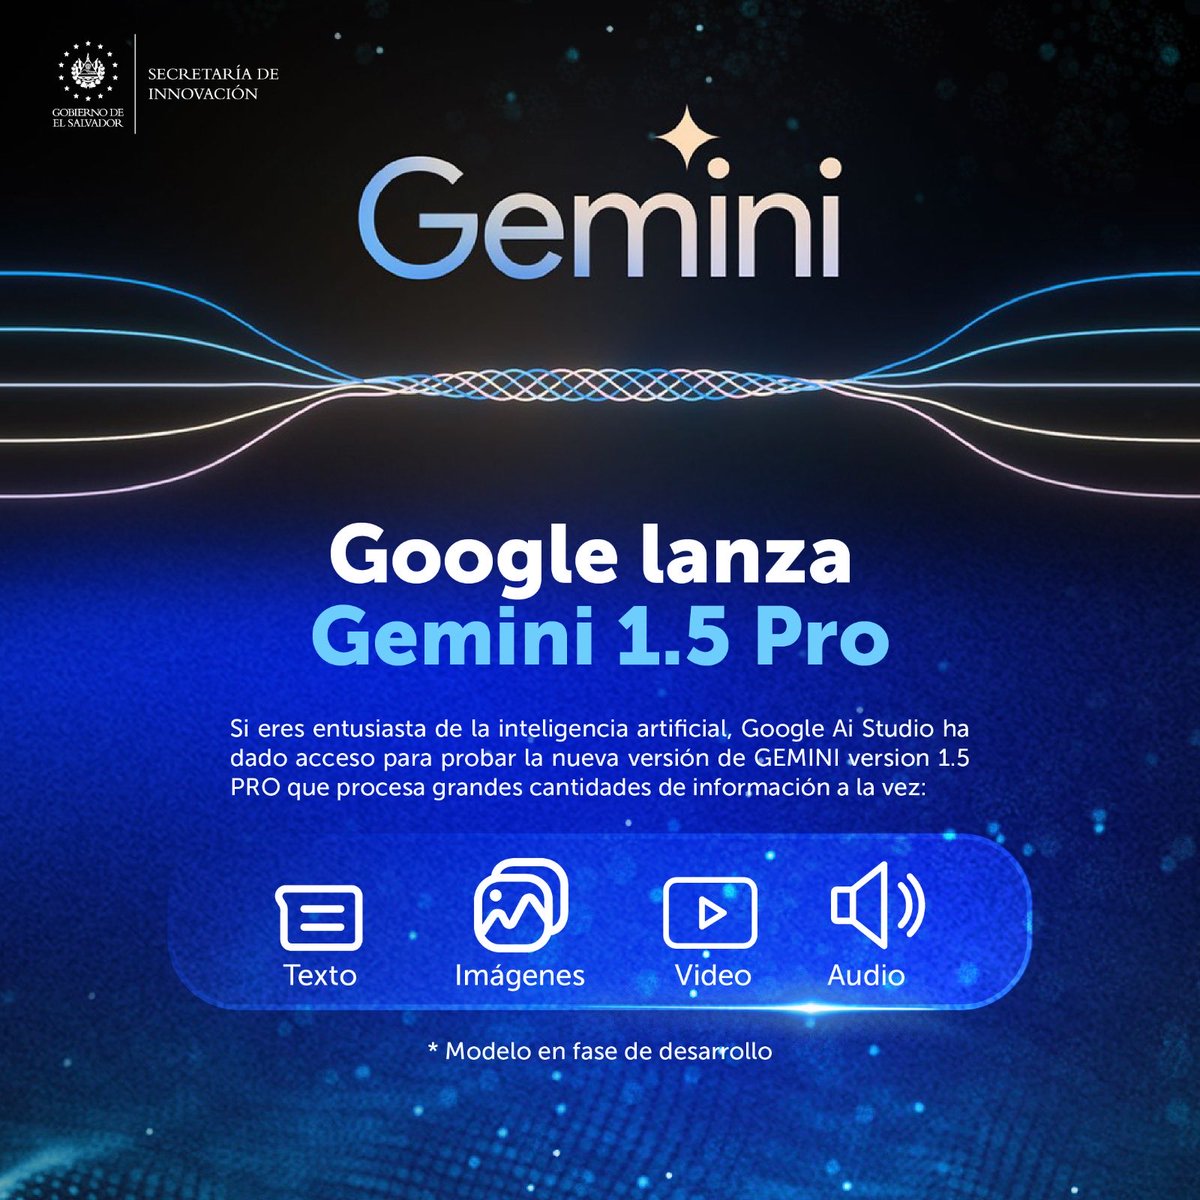 #NoticiaTech | ¡Atención amantes de la tecnología! 🌟🤖 Google AI Studio presenta GEMINI 1.5 Pro ¡Conoce su capacidad con texto, imágenes, video y audio! Aún en desarrollo, pero listo para revolucionar